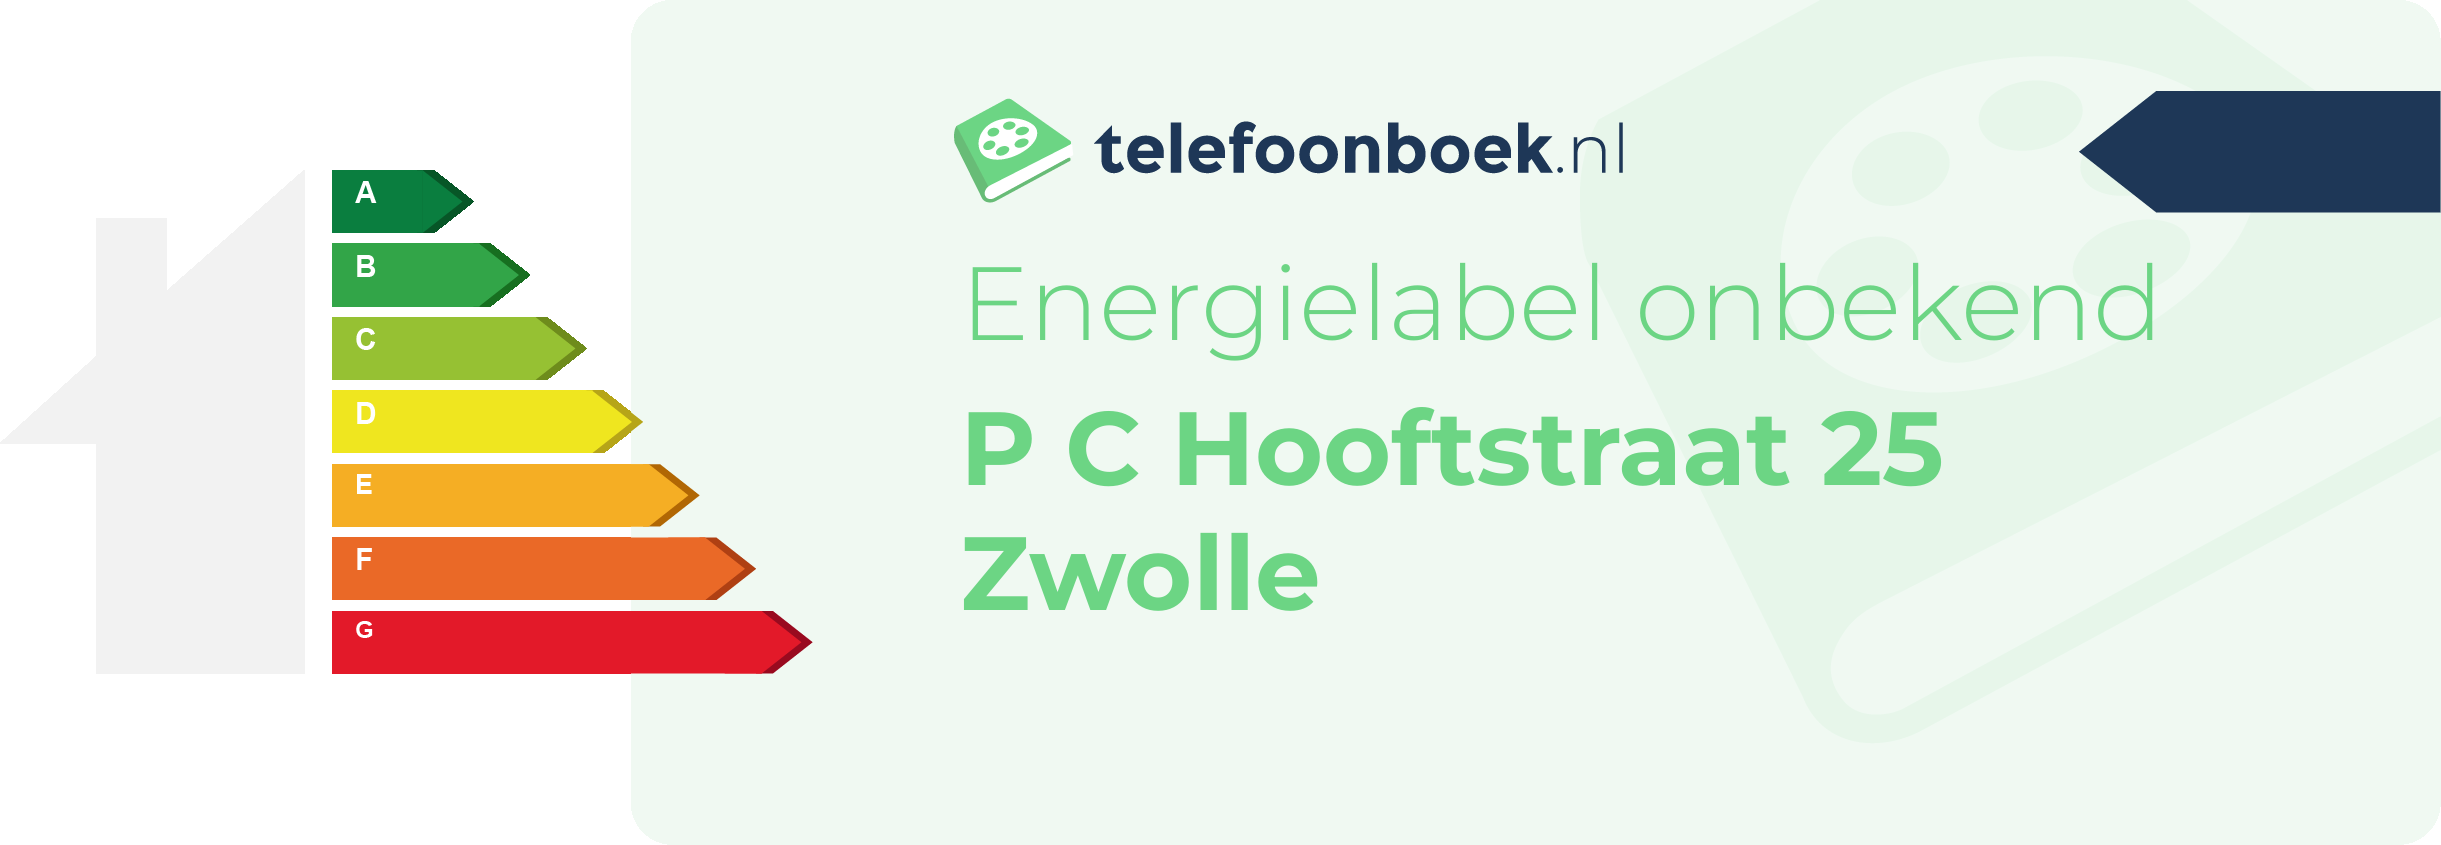 Energielabel P C Hooftstraat 25 Zwolle